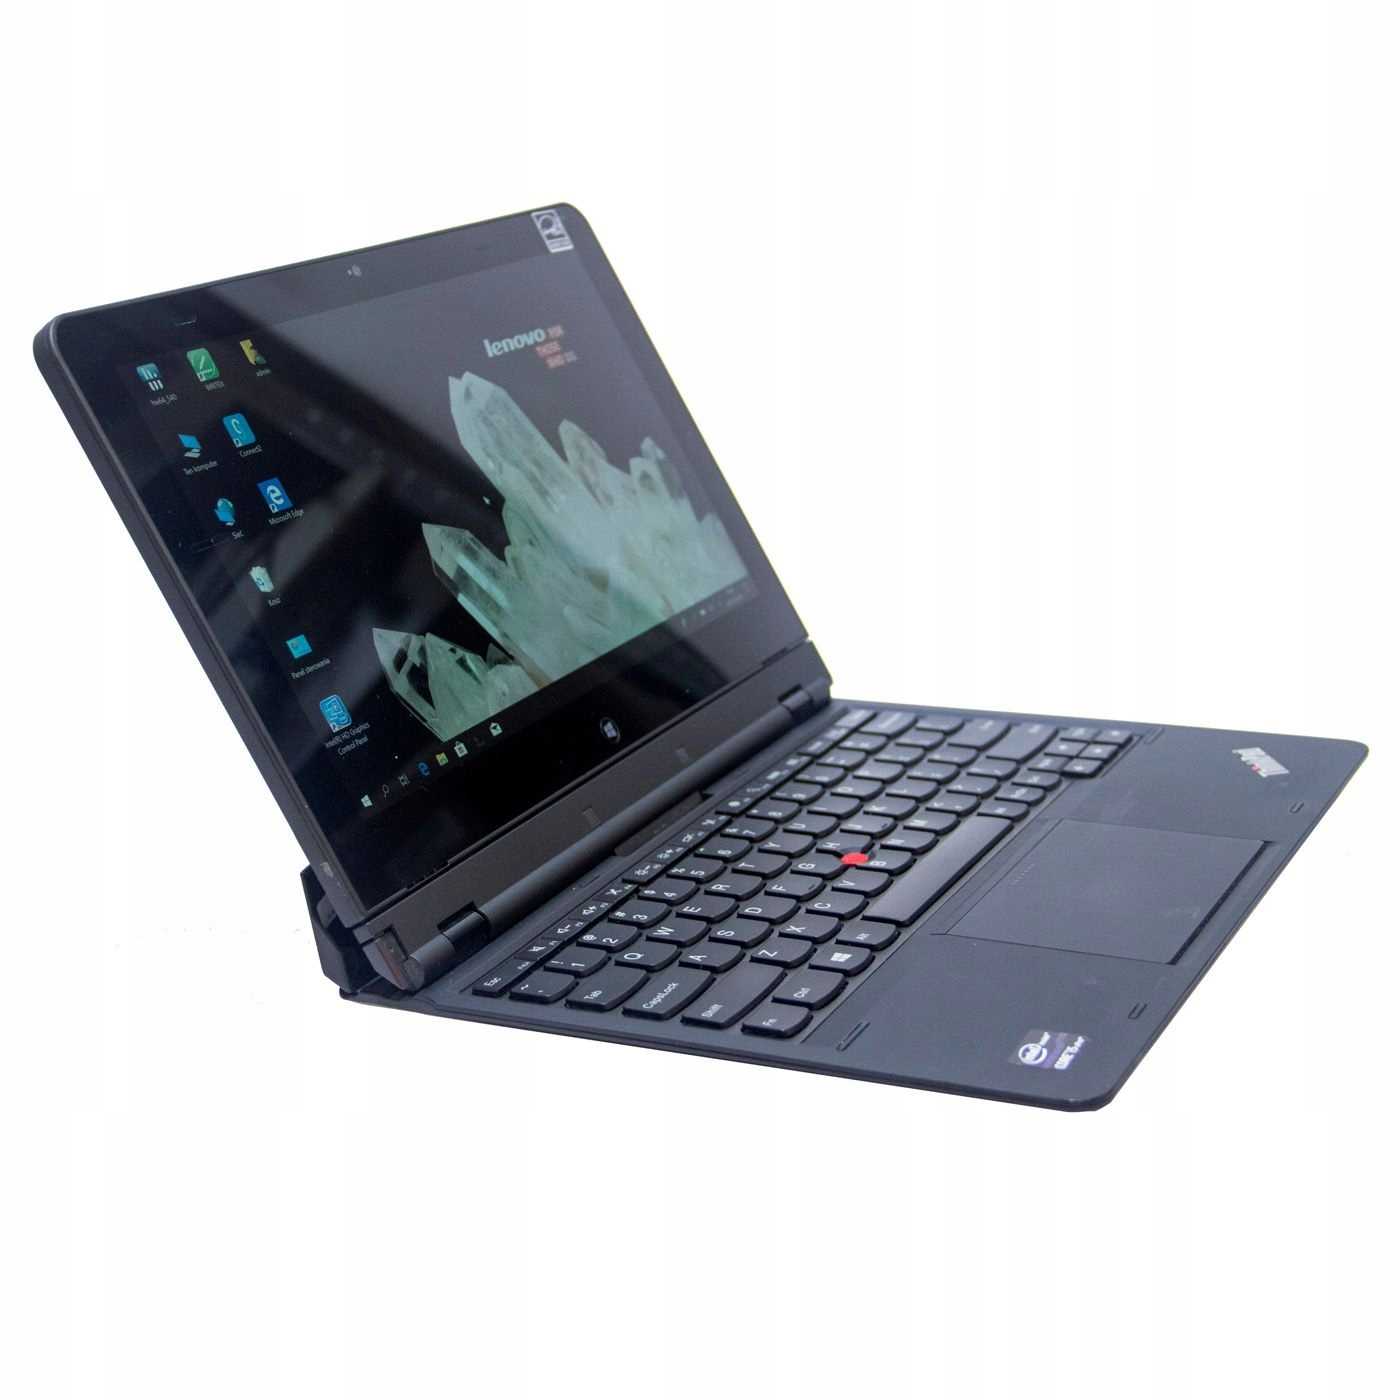 Lenovo thinkpad helix i7 256gb (черный) - купить , скидки, цена, отзывы, обзор, характеристики - планшеты